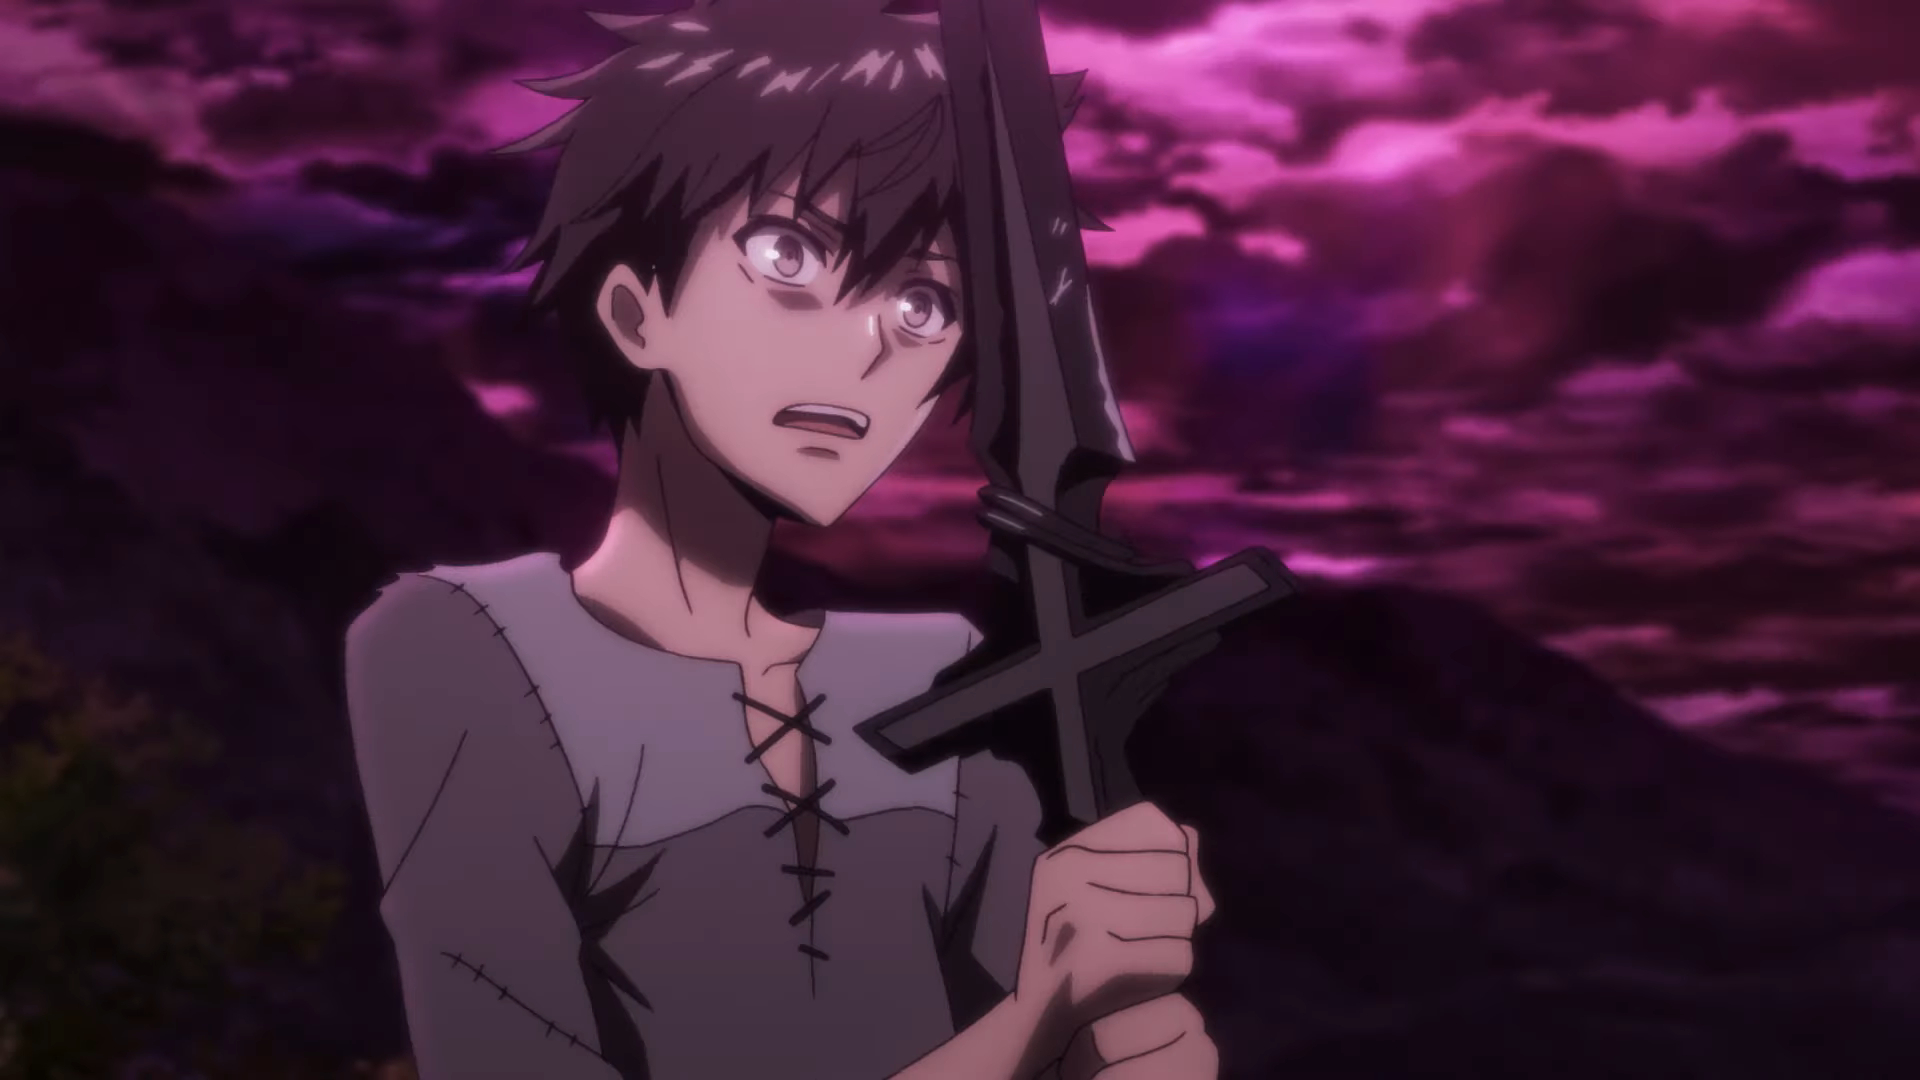  Nova temporada do anime Berserk ganha teaser